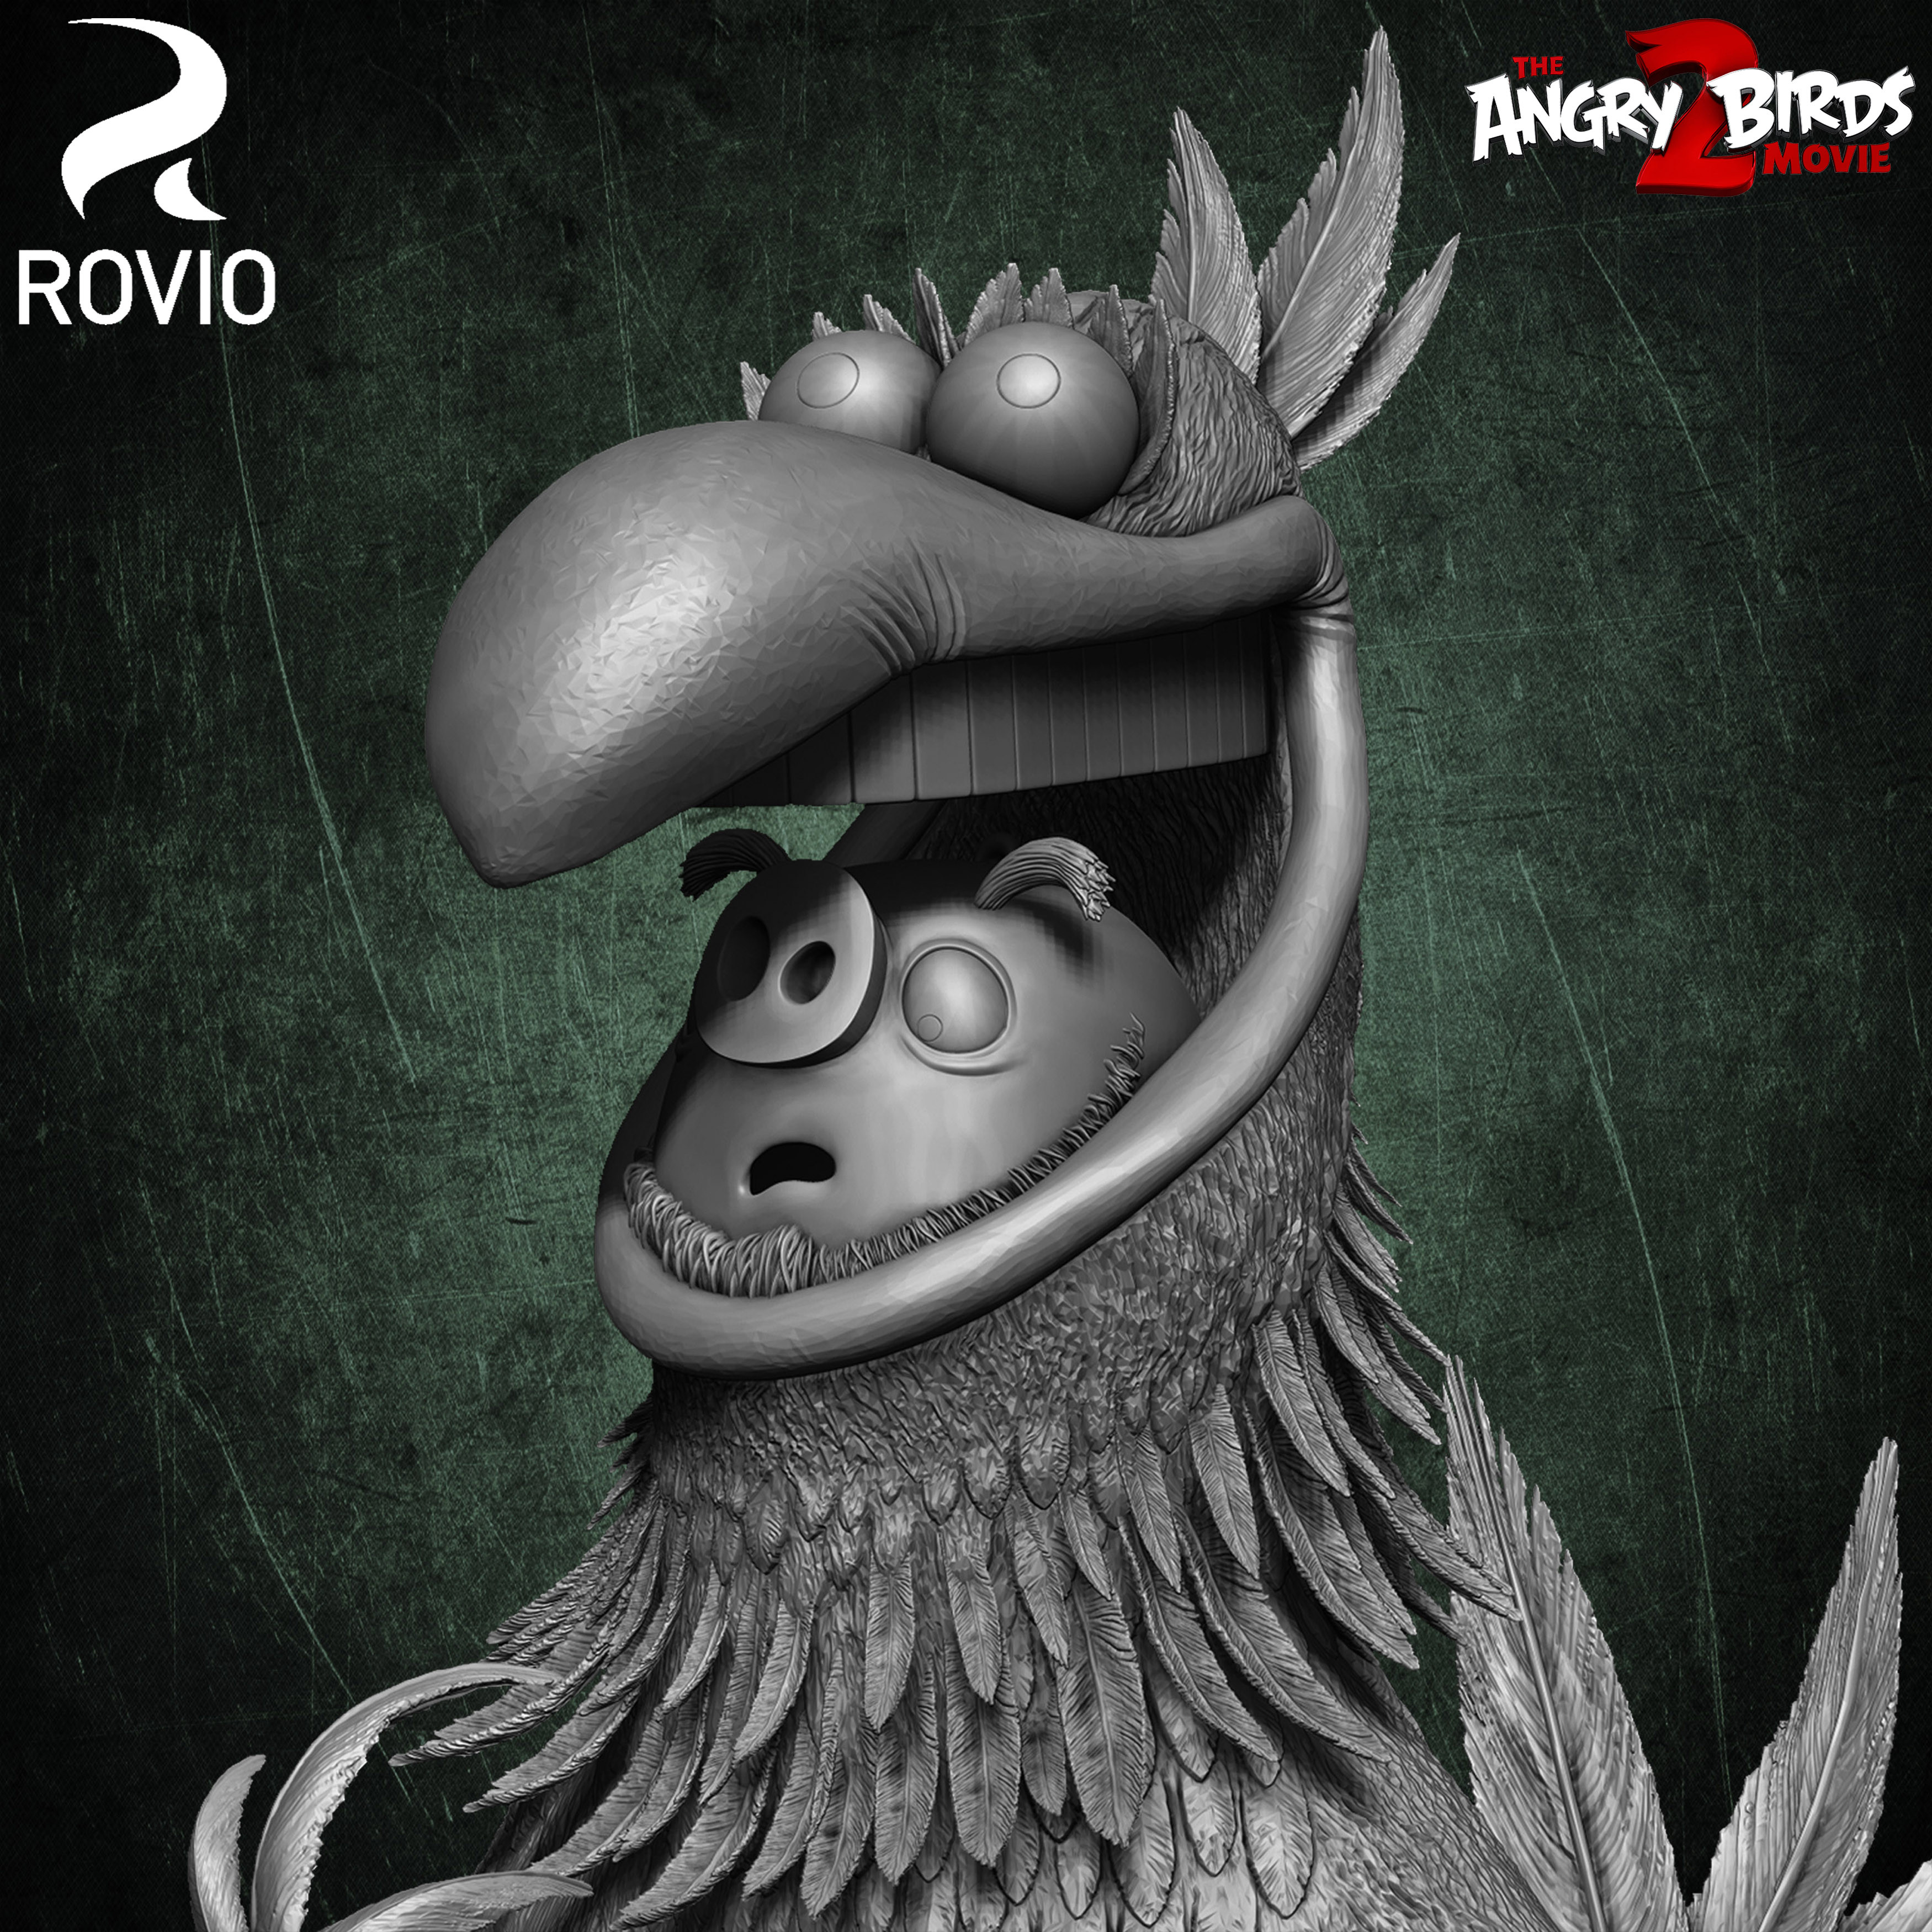 Harvey Angry Birds Movie 02 Rovio Entertainment sculpted by Yacine BRINIS 001